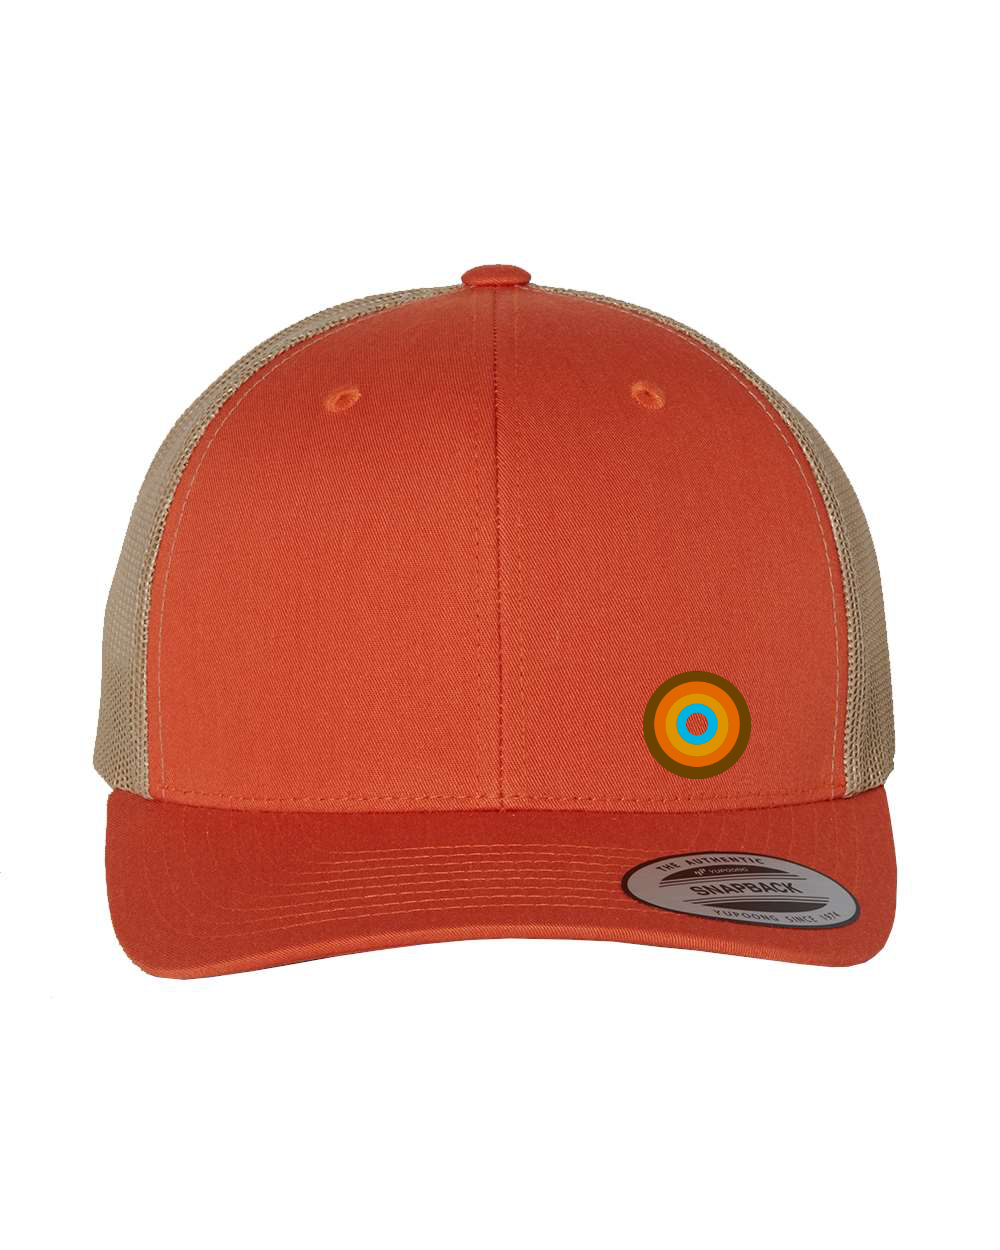 NO&YO's Iconic Caps - Orange